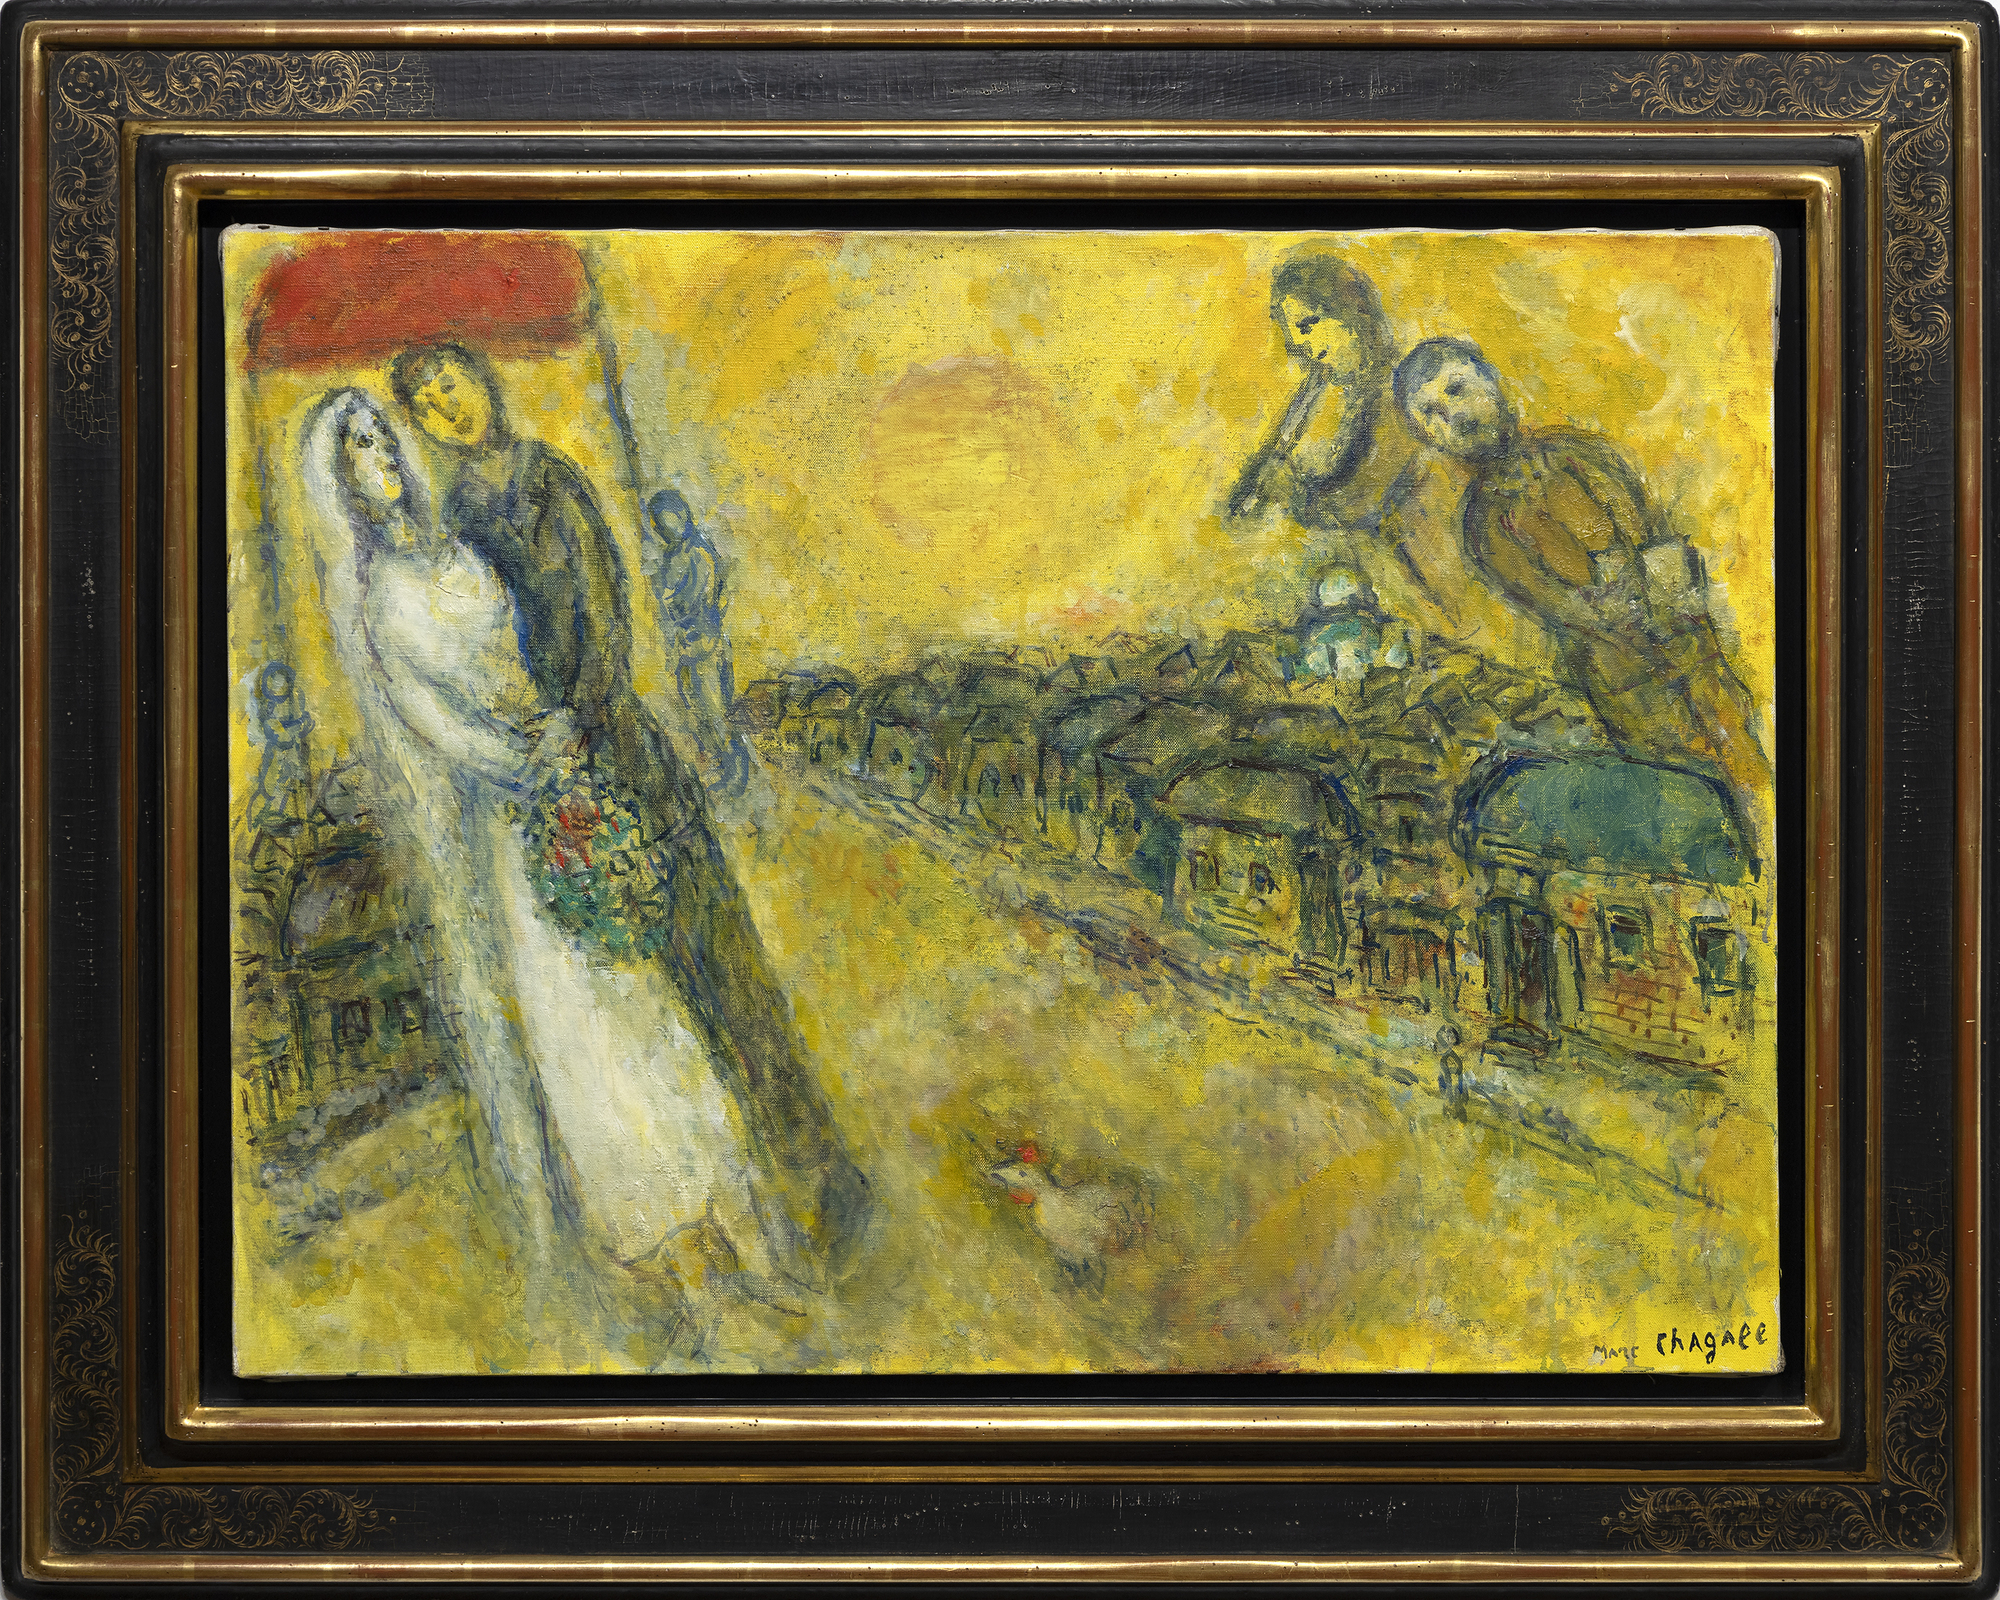 Die Welt von Marc Chagall lässt sich nicht eindämmen oder begrenzen durch die Etiketten, die wir ihr anheften. Es ist eine Welt der Bilder und Bedeutungen, die ihren eigenen, herrlich mystischen Diskurs bilden. Les Mariés sous le baldaquin (Die Braut und der Bräutigam unter dem Baldachin) entstand zu Beginn des 90. Lebensjahres des Künstlers, eines Mannes, der Tragödien und Kämpfe erlebt hatte, der aber nie die Momente der Freude im Leben vergaß. Hier werden uns die träumerischen Freuden einer russischen Dorfhochzeit mit ihren Arrangements aus altgedienten Teilnehmern mit so viel fröhlichem Witz und heiterer Unschuld vor Augen geführt, dass man sich ihrem Charme nicht entziehen kann. Durch die Verwendung einer goldfarbenen Emulsion, die eine Kombination aus Öl und opaker Gouache auf Wasserbasis darstellt, wird die Wärme, das Glück und der Optimismus von Chagalls üblichem Positivismus in einen leuchtenden Glanz gehüllt, der an den Einfluss von religiösen Ikonen mit Blattgold oder an die Malerei der Frührenaissance erinnert, die den Eindruck von göttlichem Licht oder spiritueller Erleuchtung vermitteln wollte. Die Kombination von Öl und Gouache kann eine Herausforderung sein. Aber hier, in Les Mariés sous le baldaquin, setzt Chagall sie ein, um der Szene eine jenseitige Qualität zu verleihen, fast so, als ob sie sich vor seinem geistigen Auge materialisiert hätte. Die zarte Textur erweckt den Eindruck, dass das Licht vom Werk selbst ausgeht, und verleiht den im Himmel schwebenden Figuren eine gespenstische Qualität.